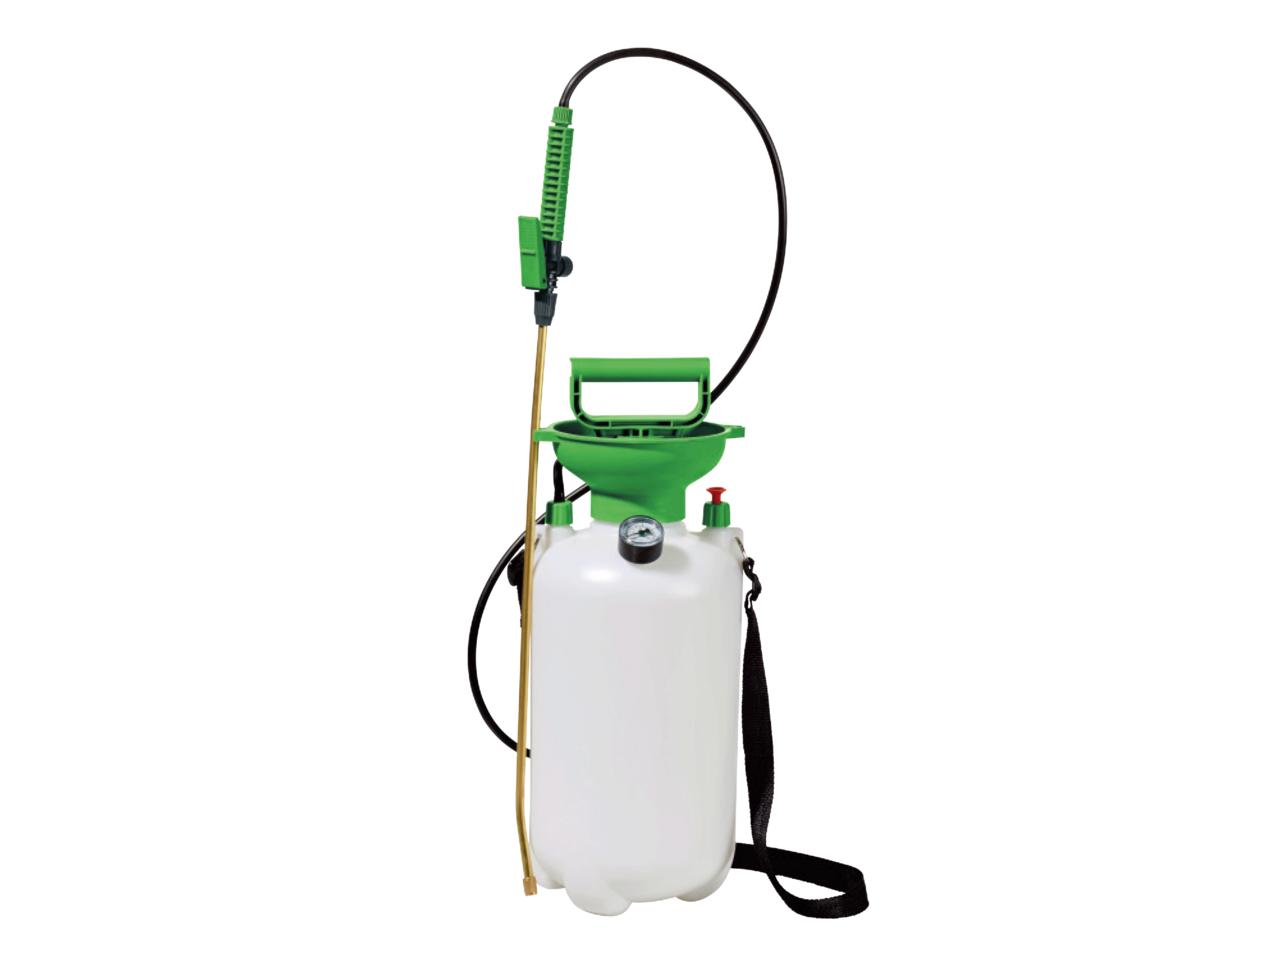 FLORABEST 5L Garden Pressure Sprayer